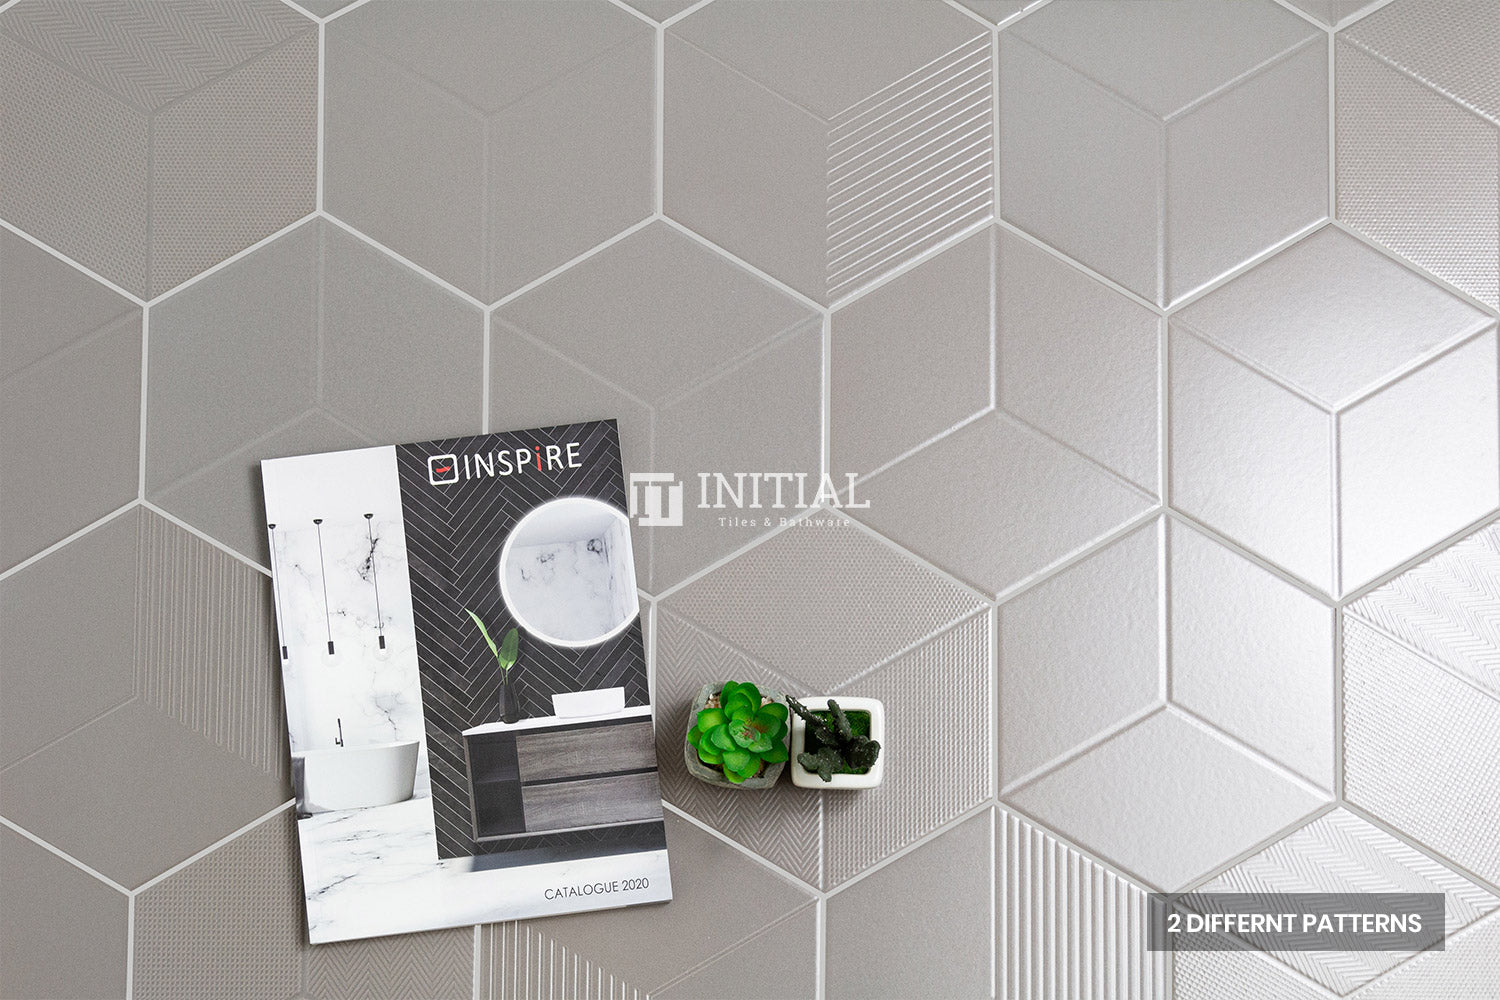 Modern look Tile Freestyle Hexagon Modern Grey Matt 200X230 ,